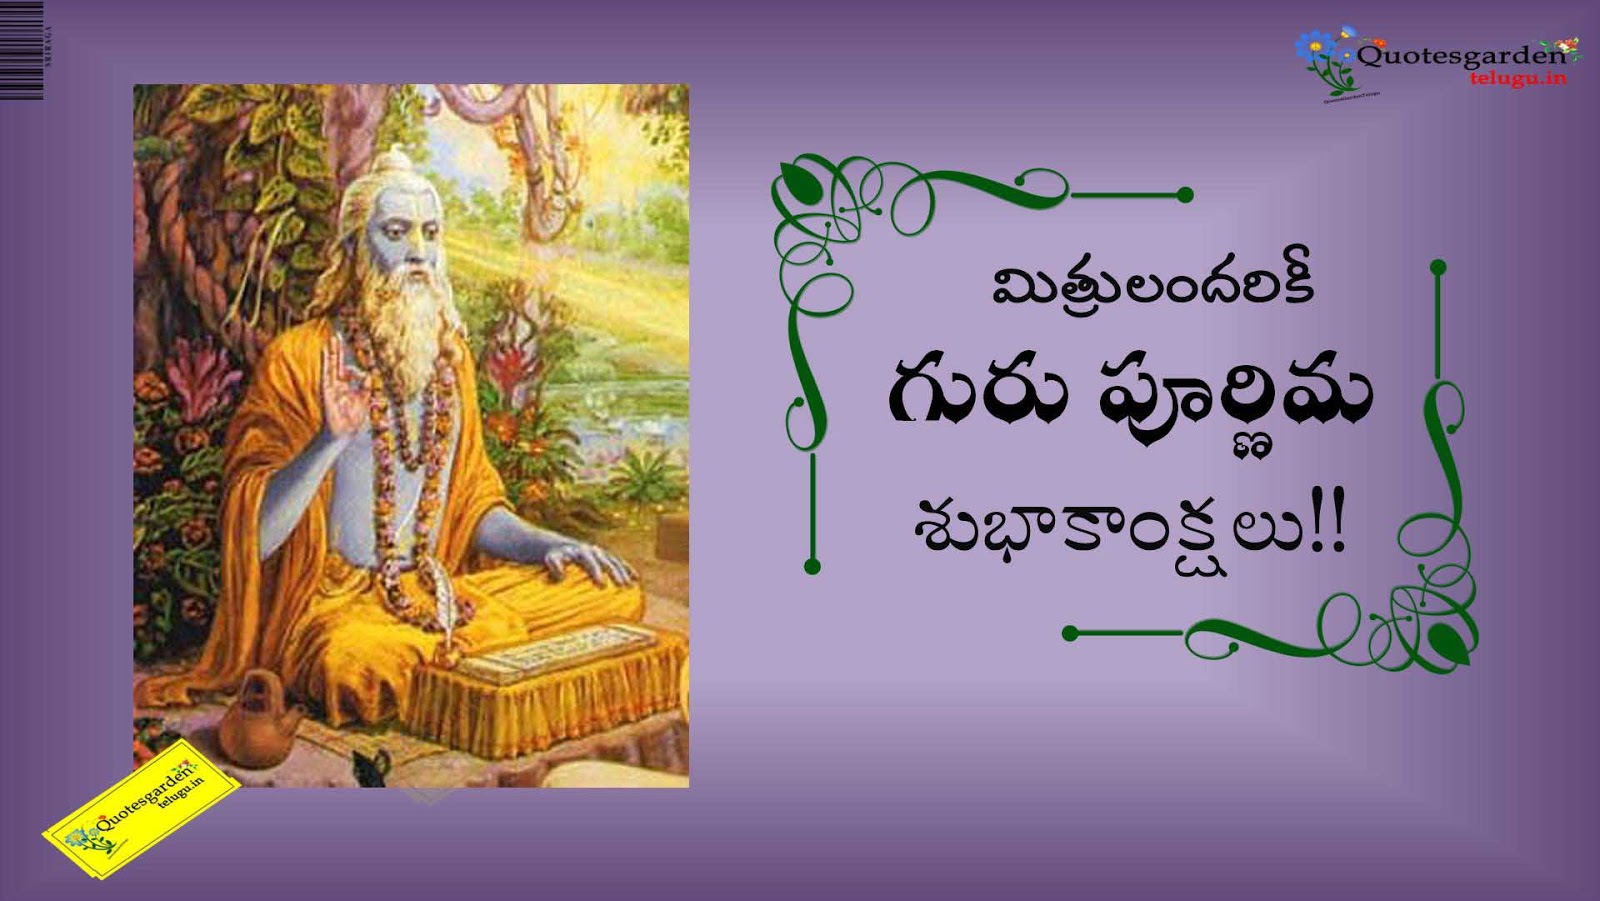 Guru Purnima vyasa purnima Shubhakanshalu Greetings wishes in ...